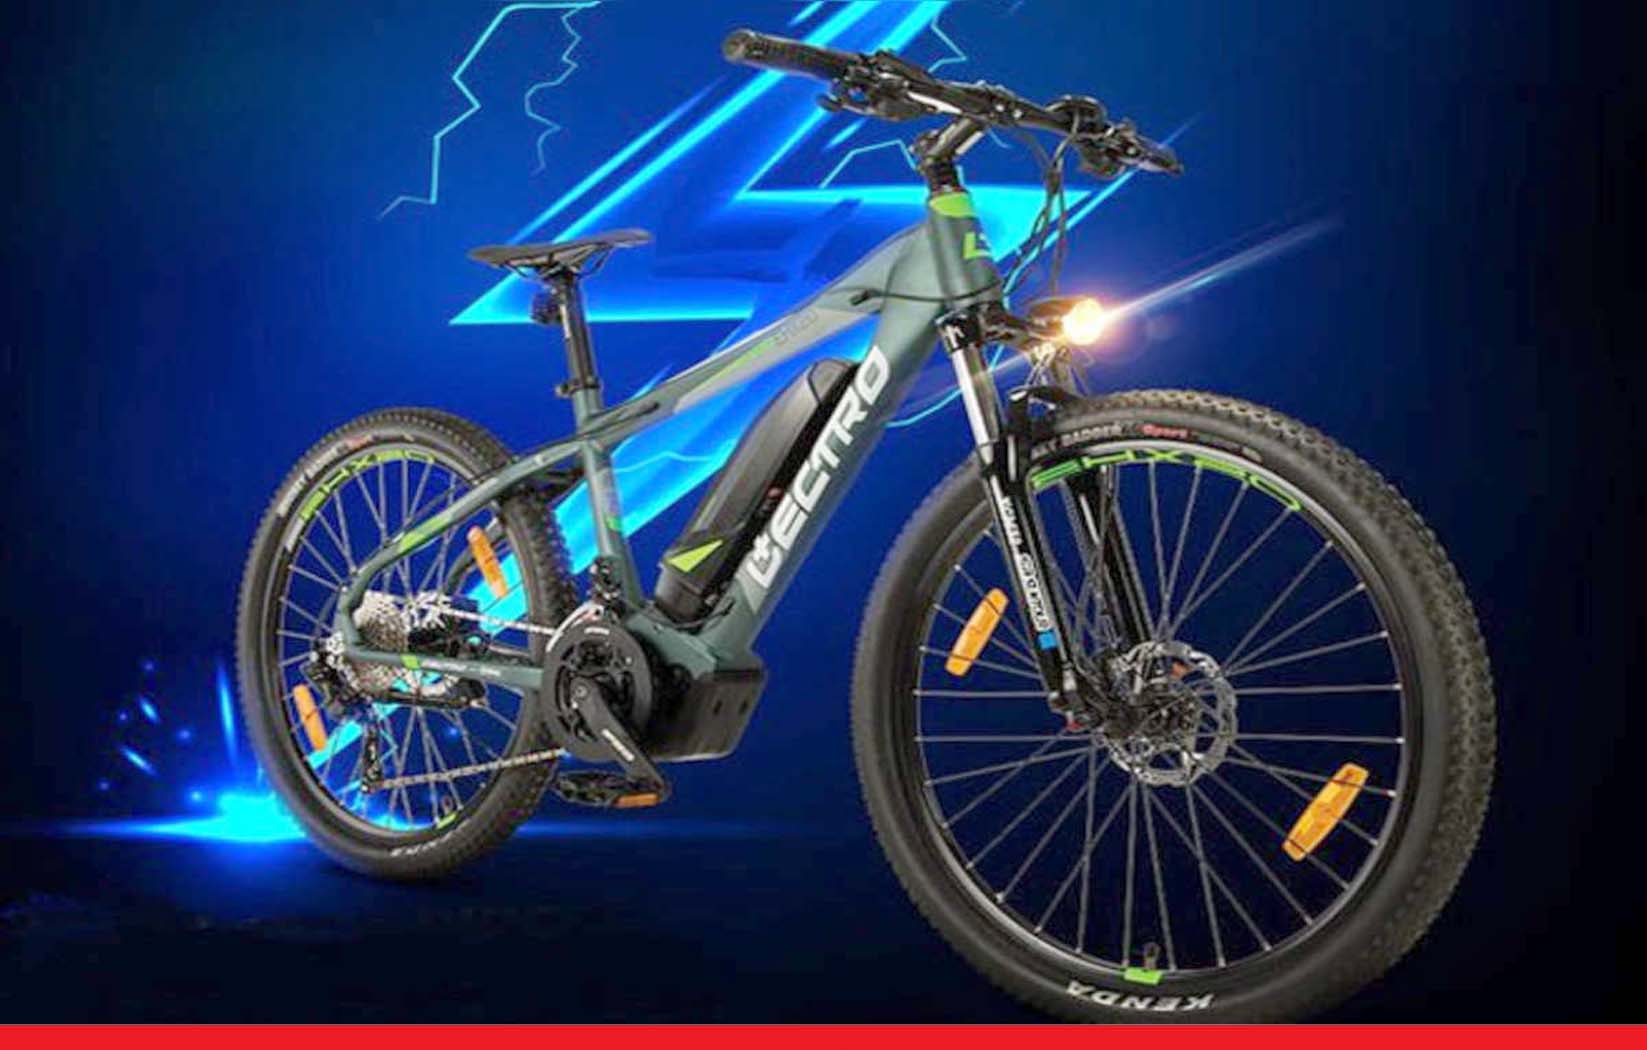 हीरो लेक्ट्रो सी 3 साइकिल, फुल चार्ज में करेगी 30 किलोमीटर की दूरी तय